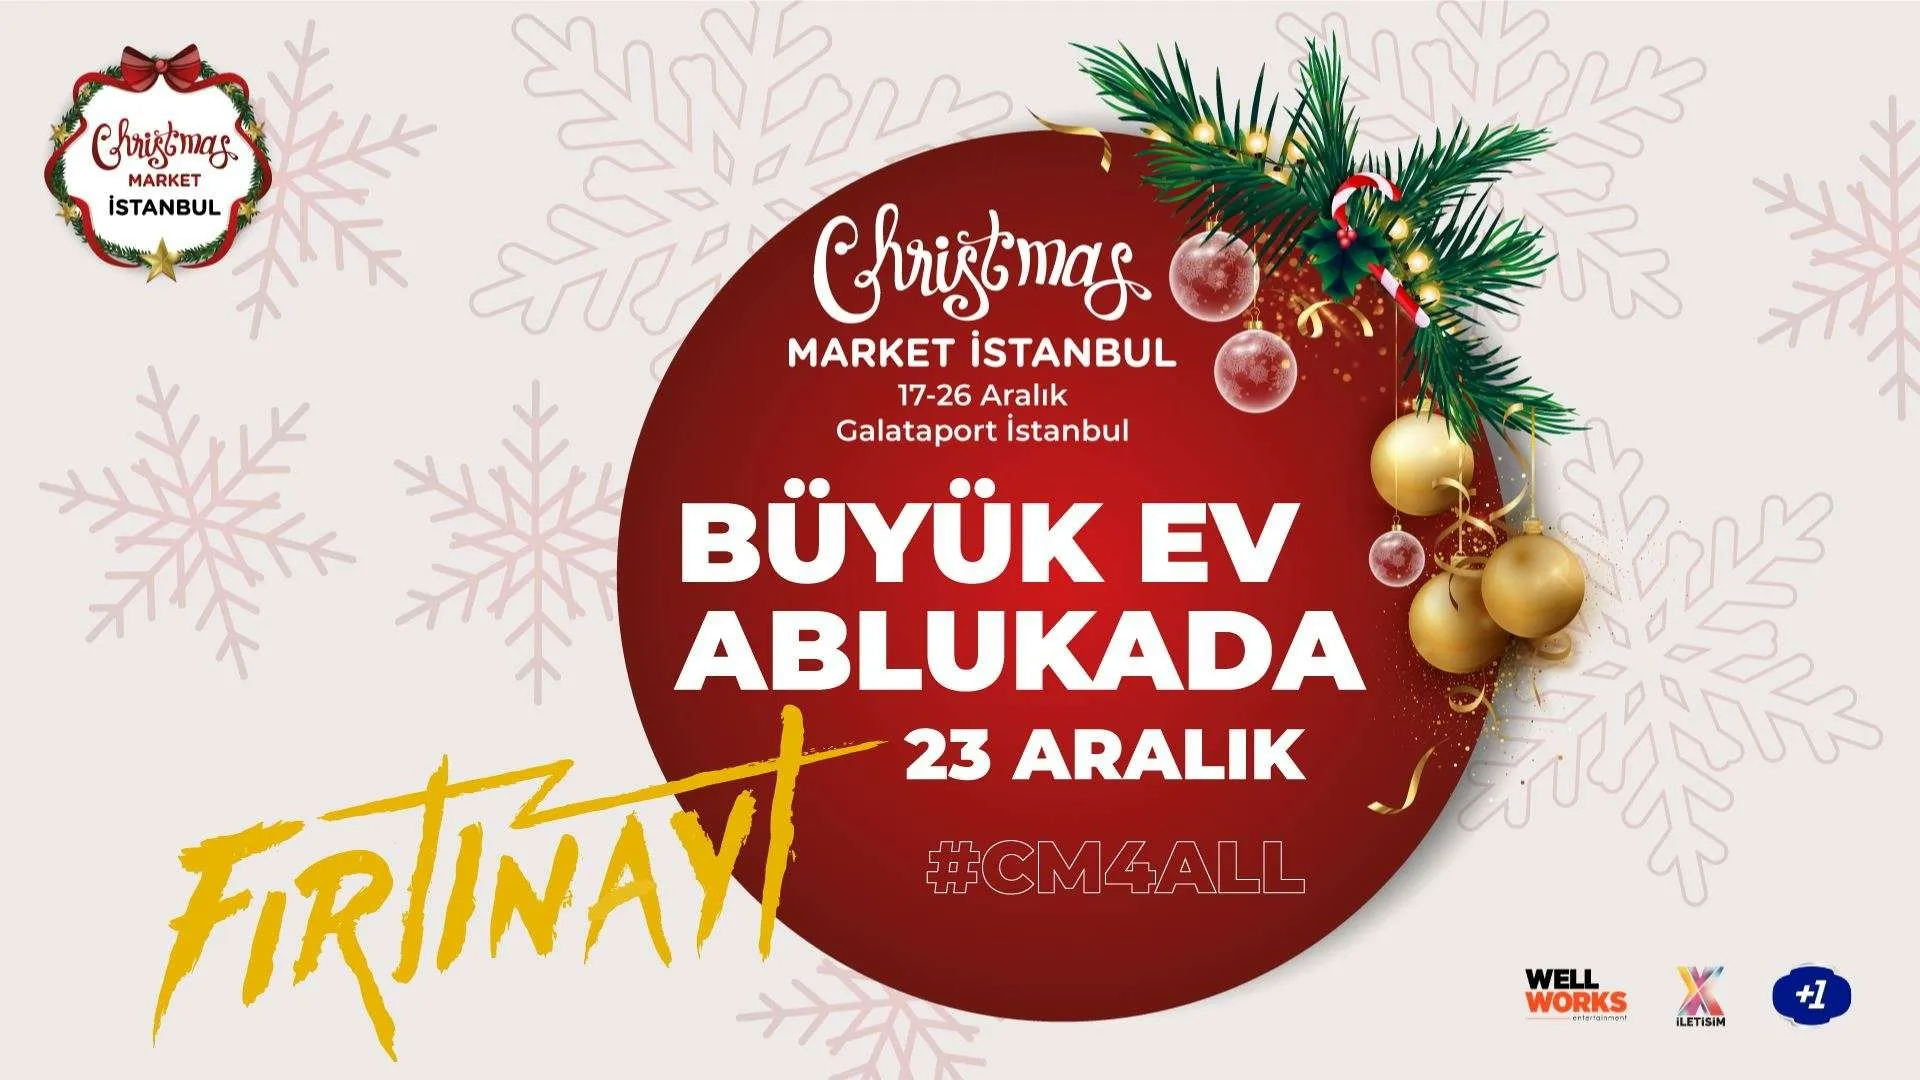 Büyük Ev Ablukada - Christmas Market İstanbul